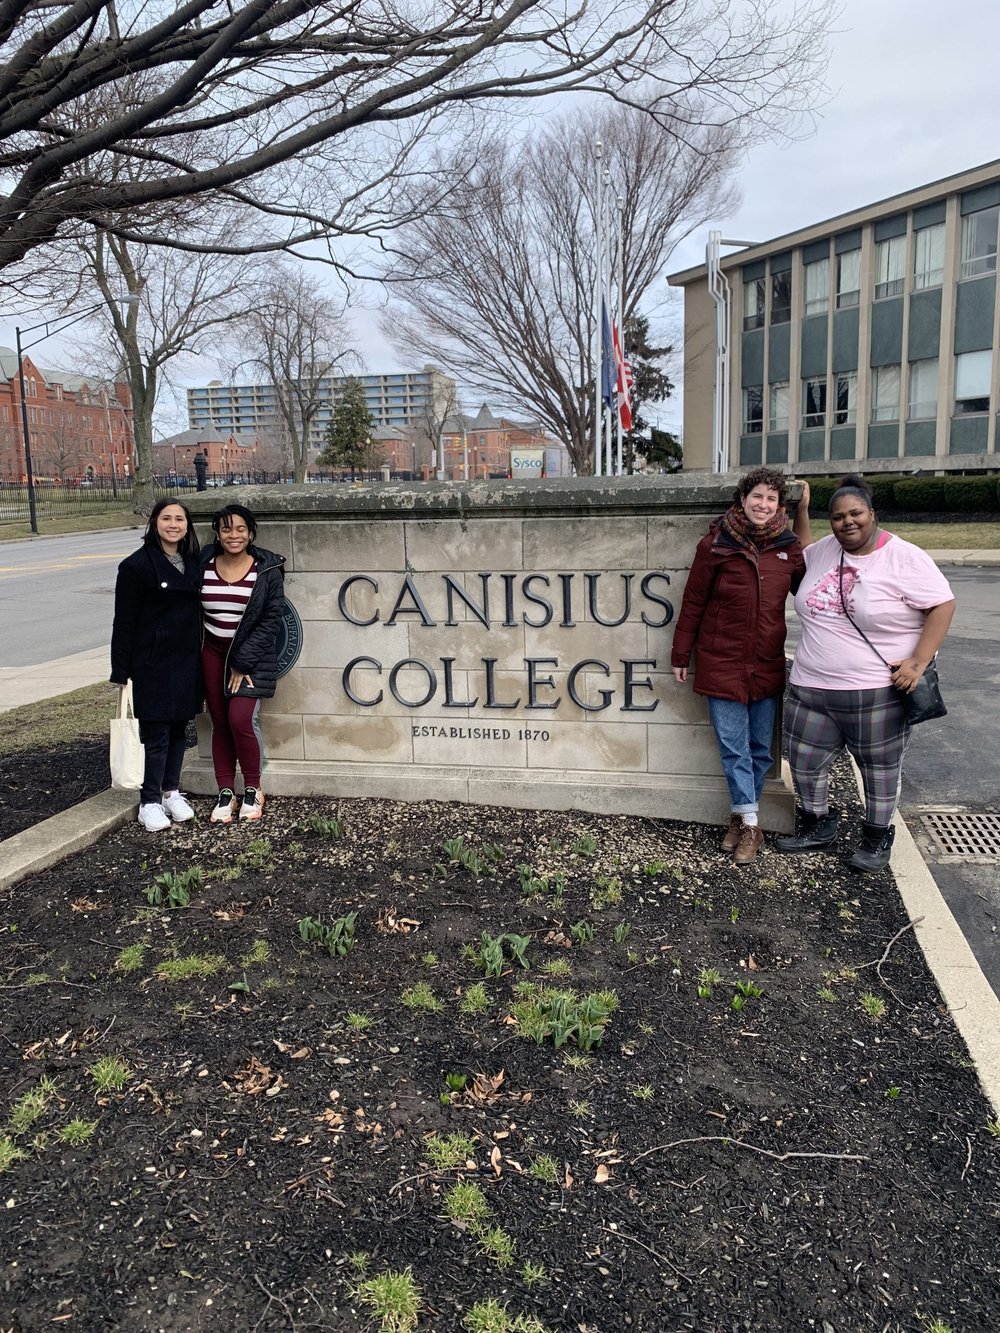 Canisius-College2-3-24-23-scaled (2).jpg